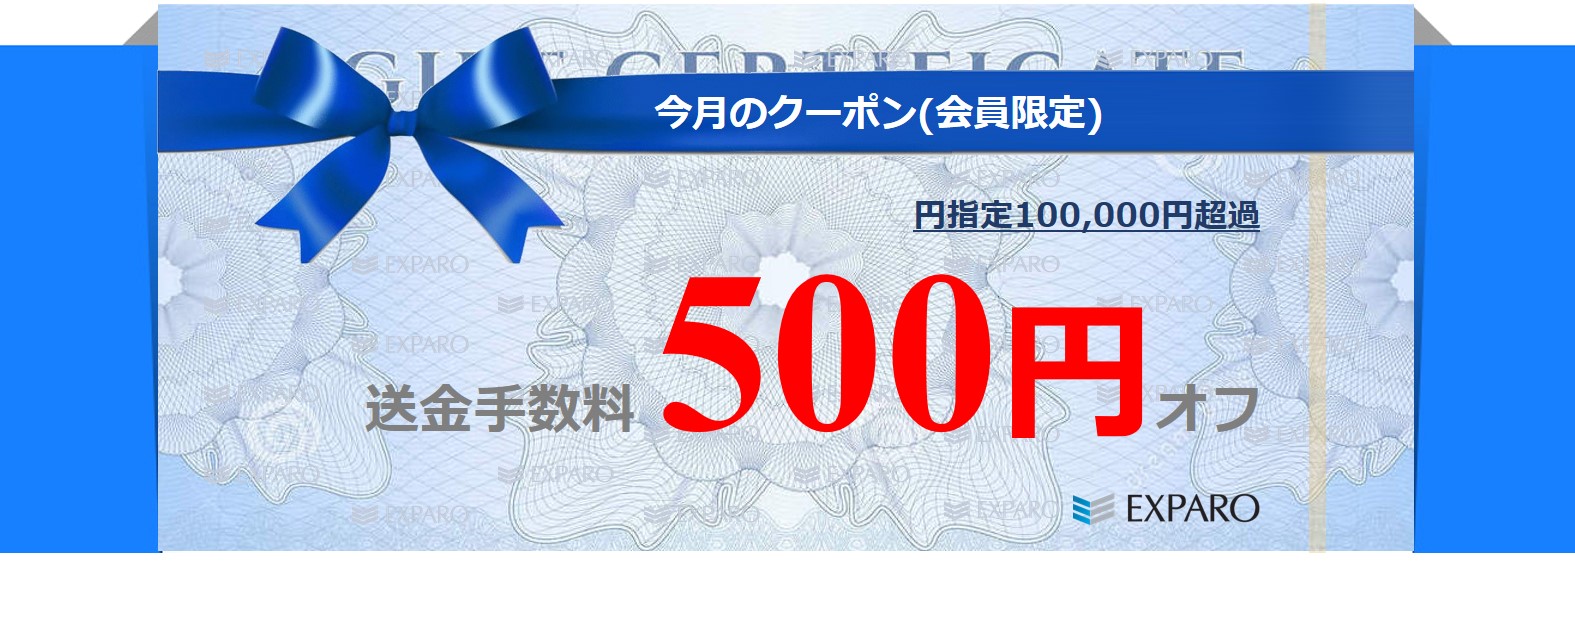 円指定送金手数料500円割引